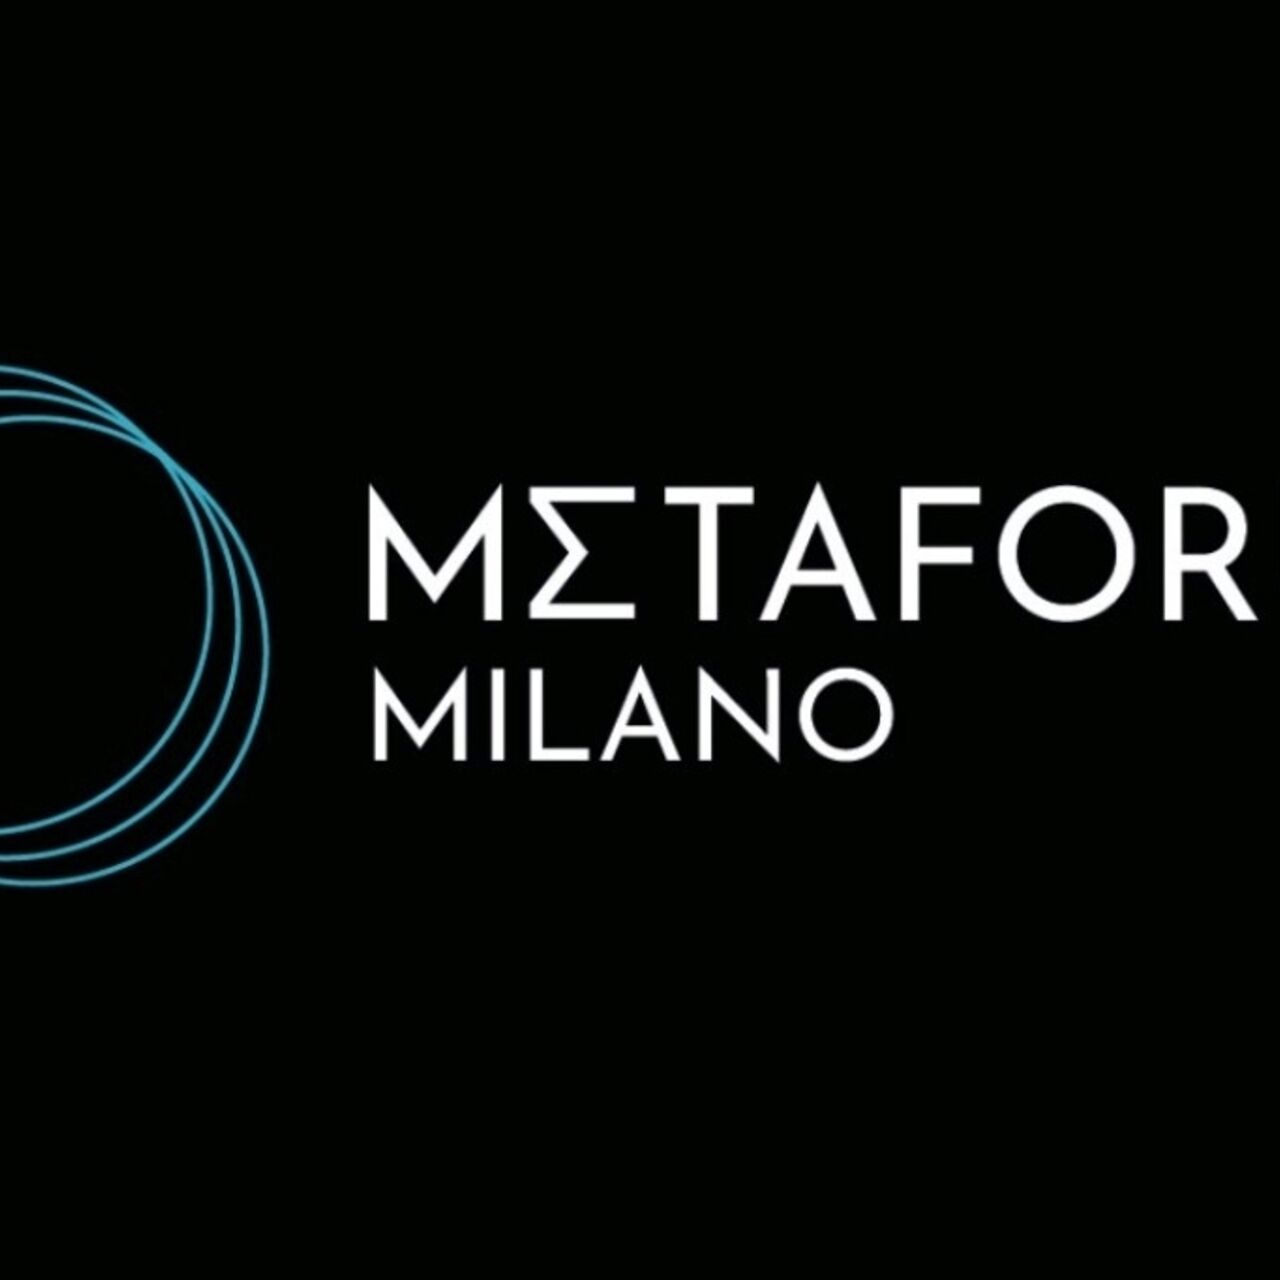 Metaforum: Metaforum Milanon logo